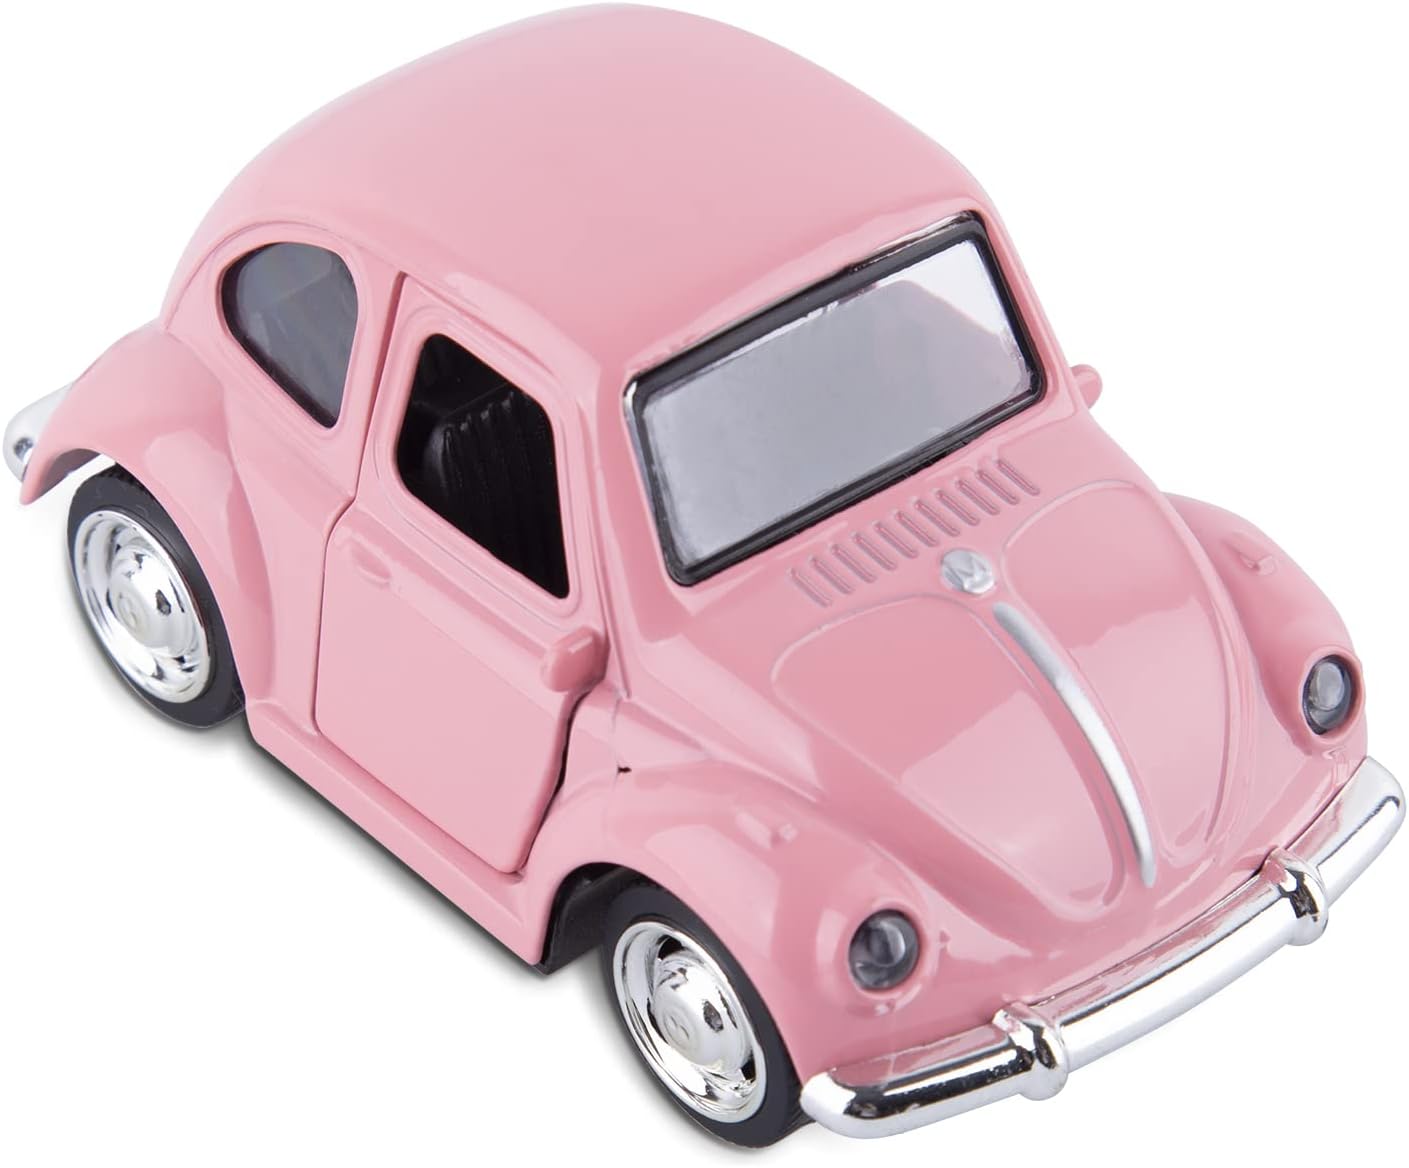 die cast alloy beetle car model review